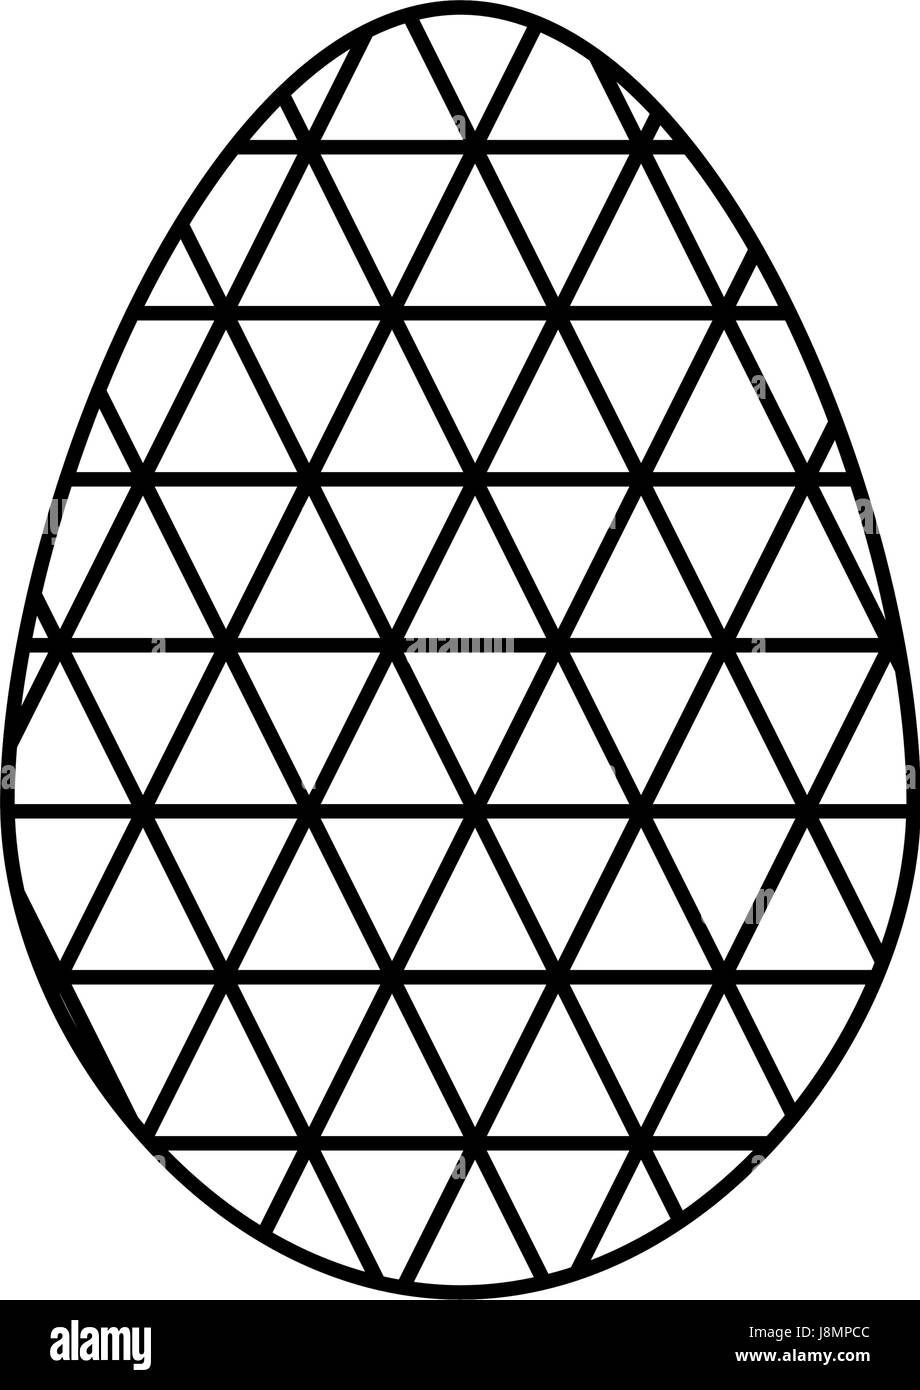 Uovo di cioccolato di pasqua Illustrazione Vettoriale